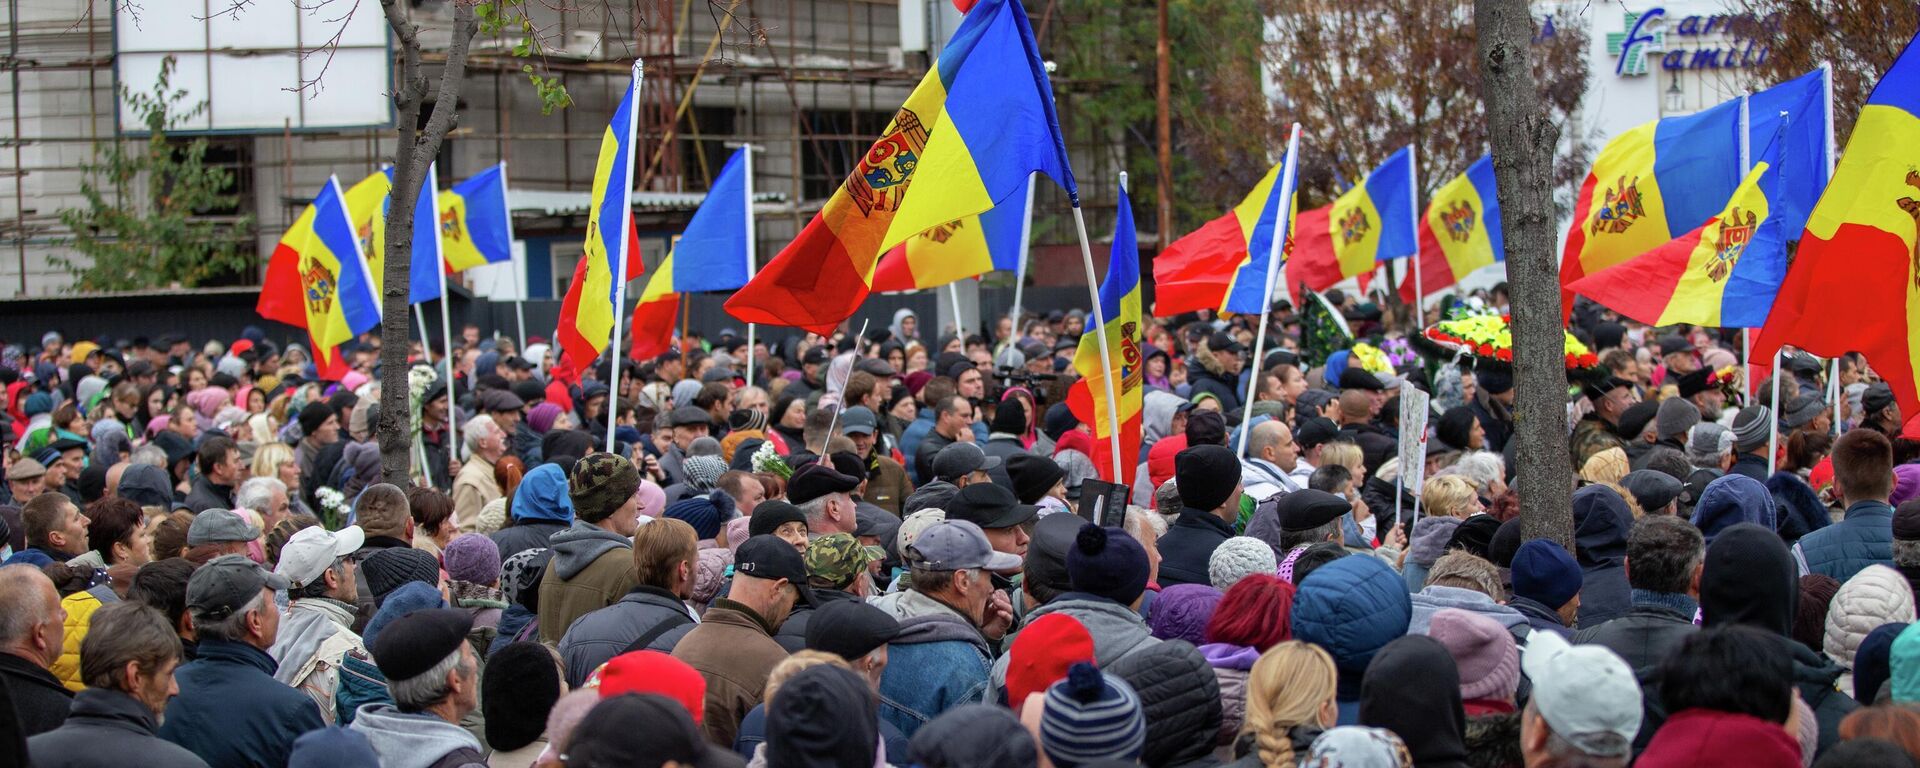 Антиправительственный митинг в центре Кишинева – прямая трансляция - Sputnik Южная Осетия, 1920, 13.11.2022